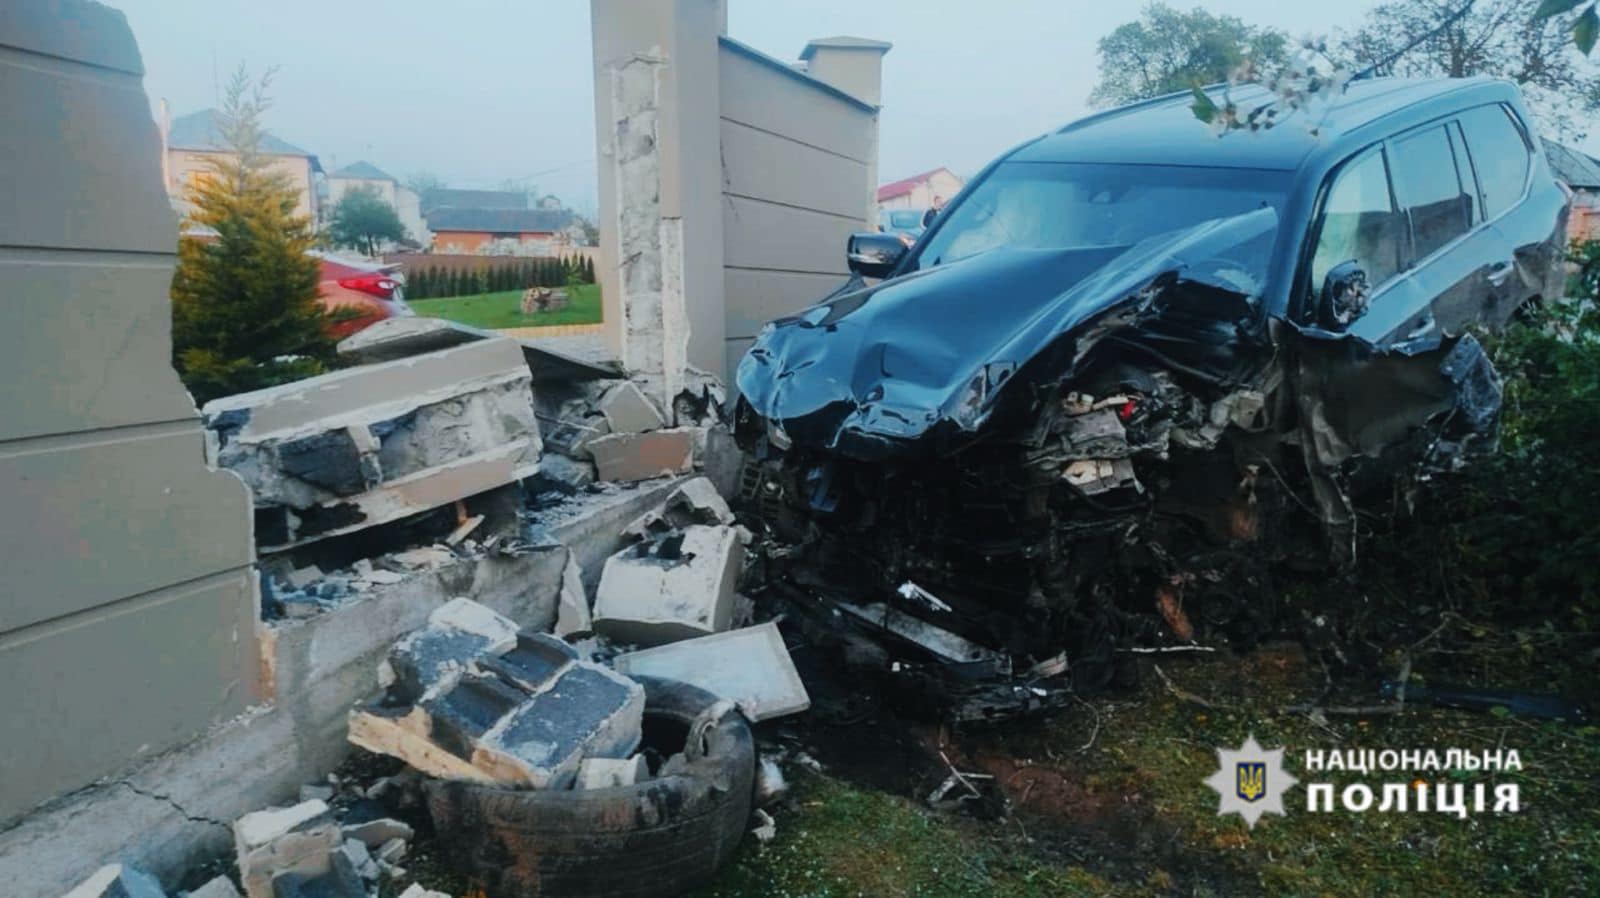 Був нетверезий: результат аналізу крові водія Lexus, який вчинив смертельну ДТП під Тисменицею